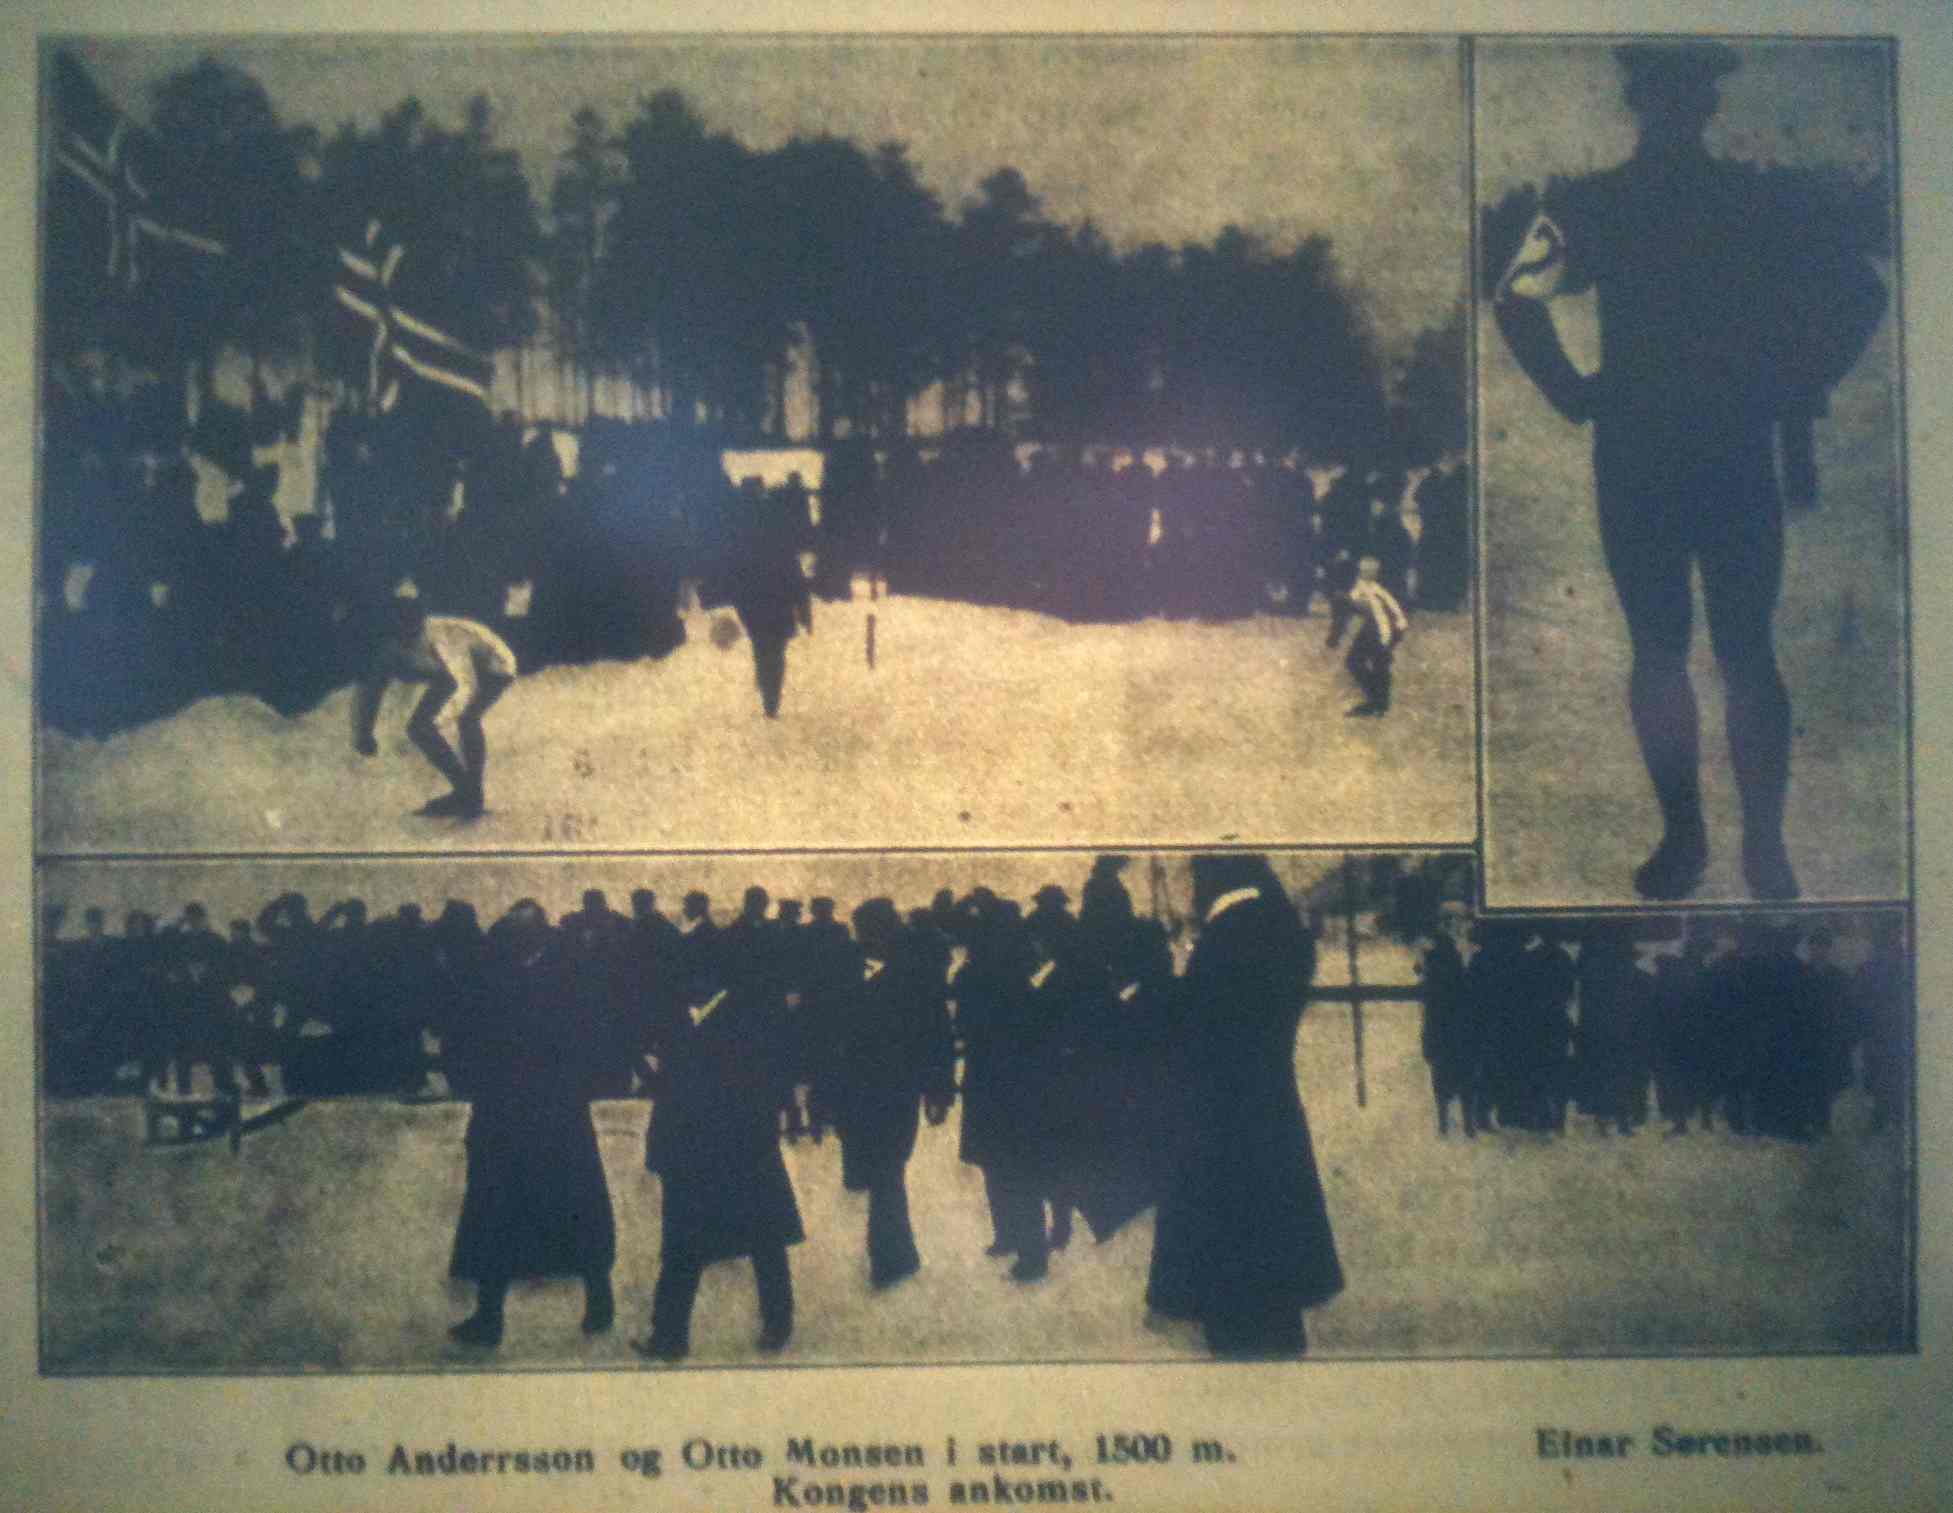 Otto Andersson og Otto Monsen i starten på 1500 m/Ejnar Sørensen/Kongens ankomst